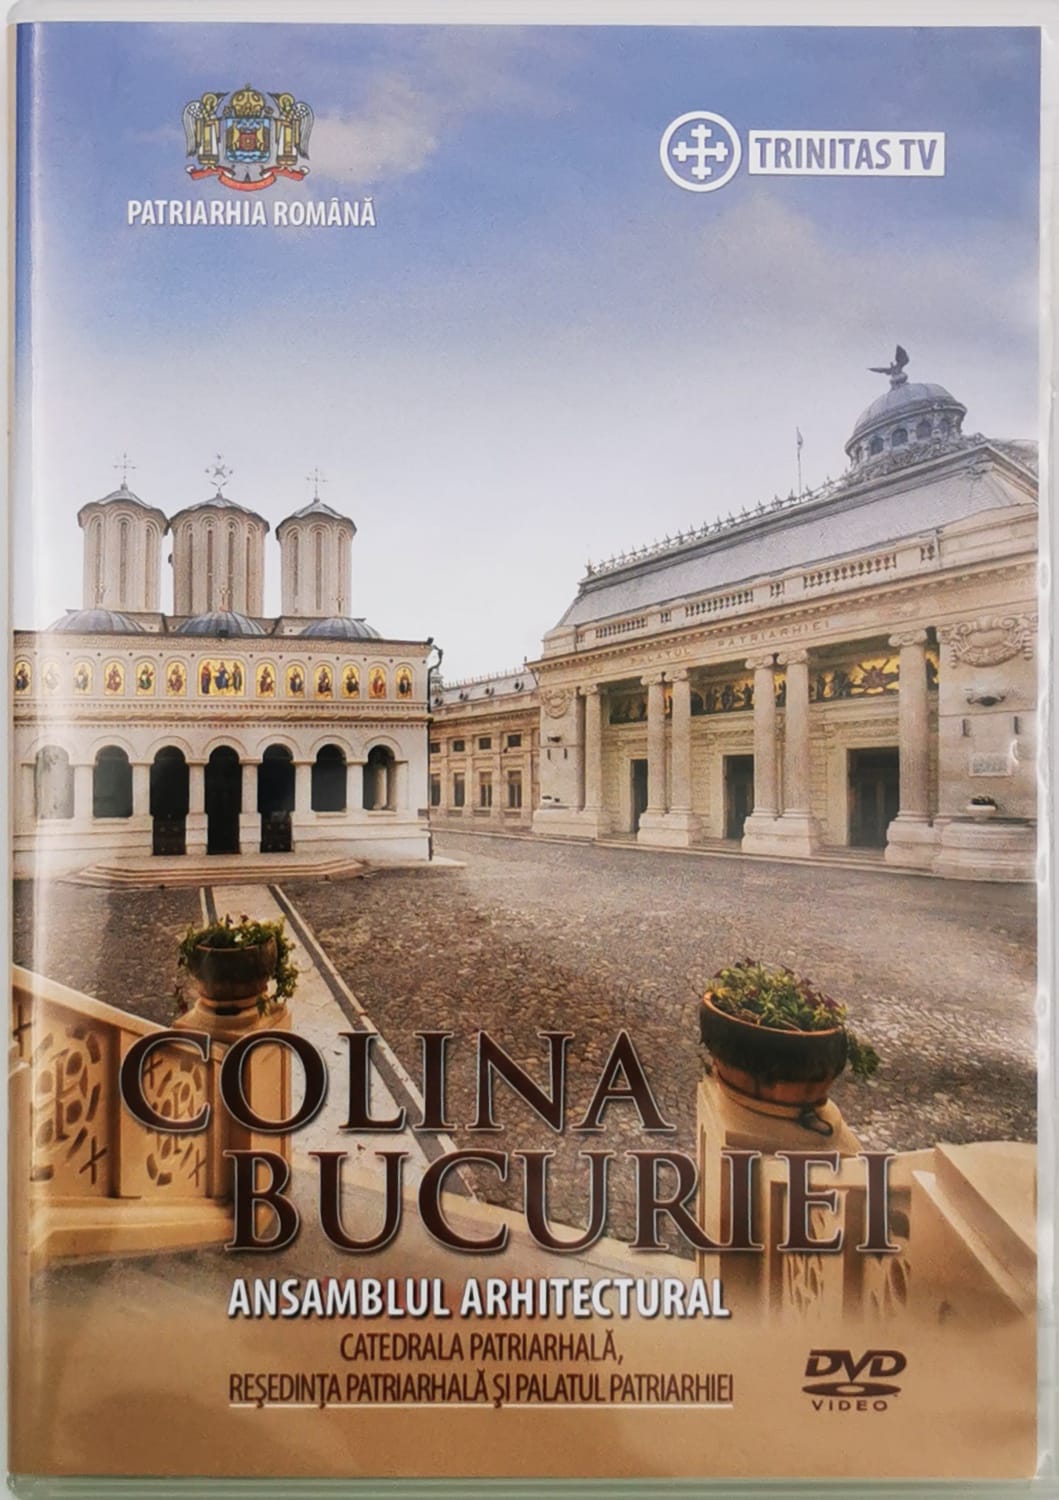 DVD Colina Bucuriei – Catedrala Patriarhală, Reşedinţa Patriarhală şi Palatul Patriarhiei